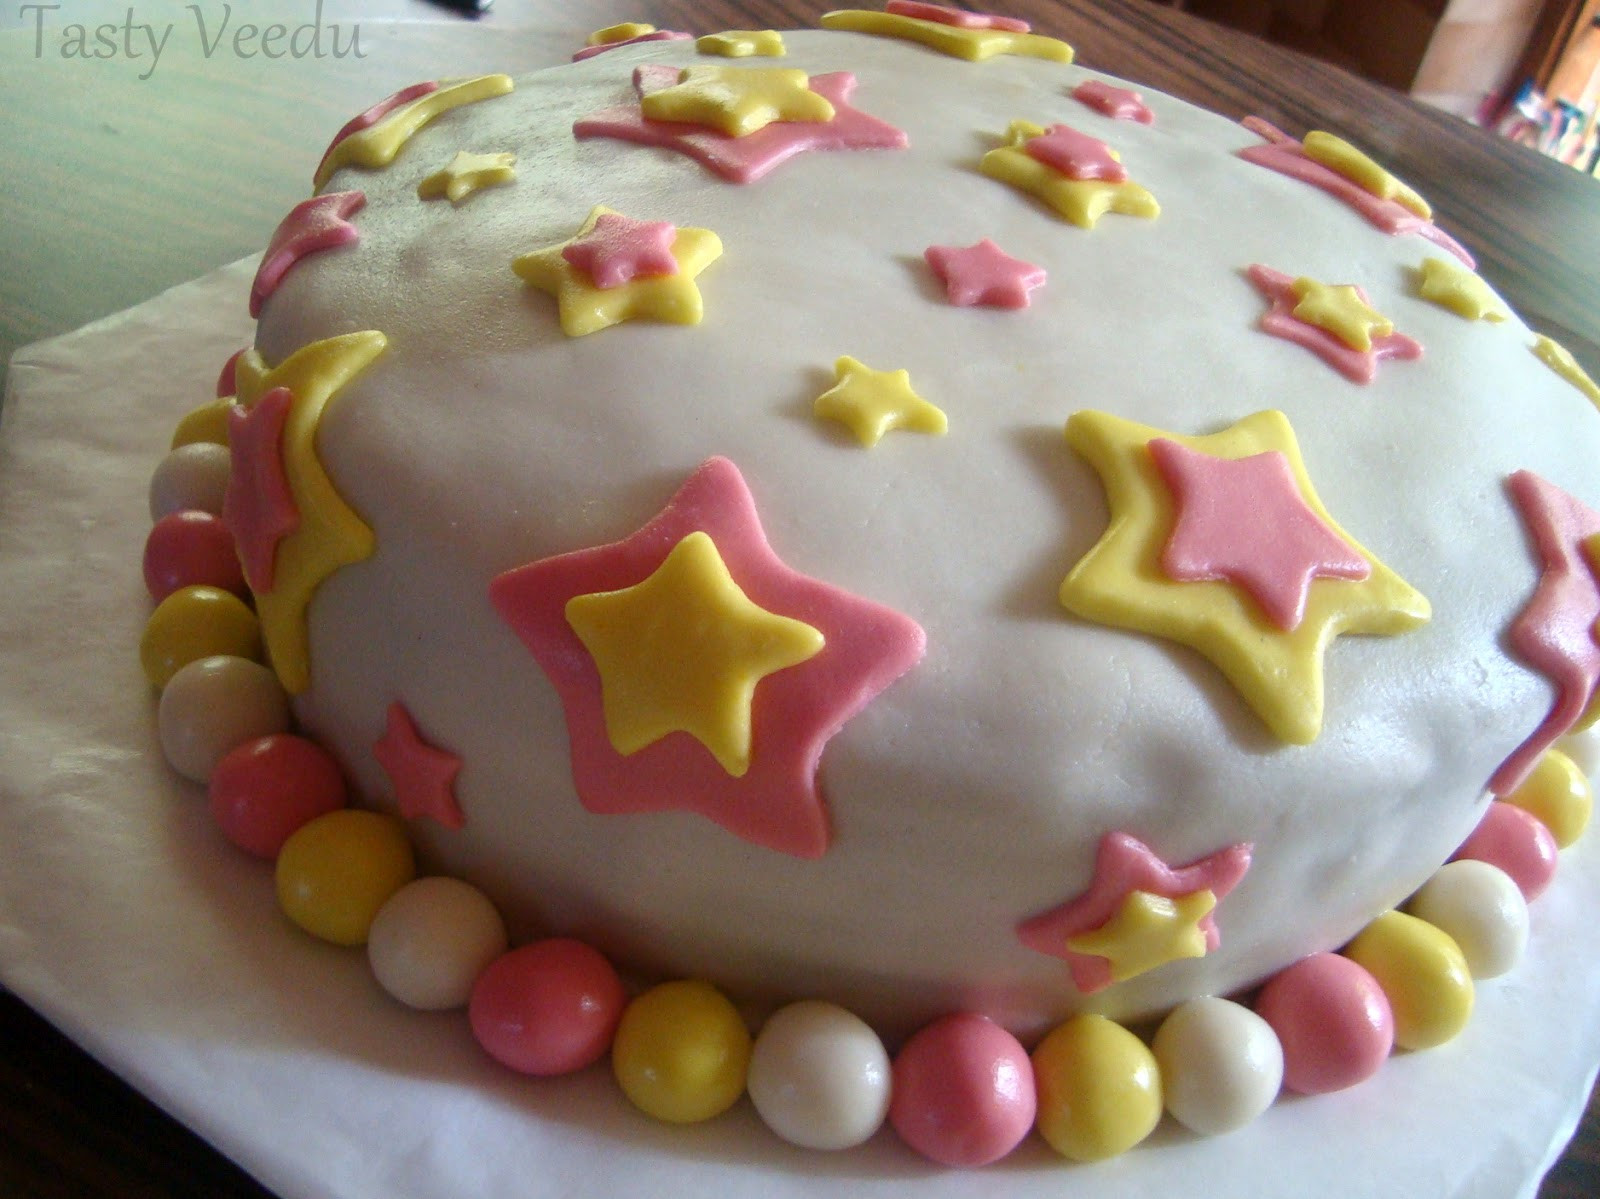 Fondant Birthday Cakes
 Tasty Veedu FONDANT BIRTHDAY CAKE